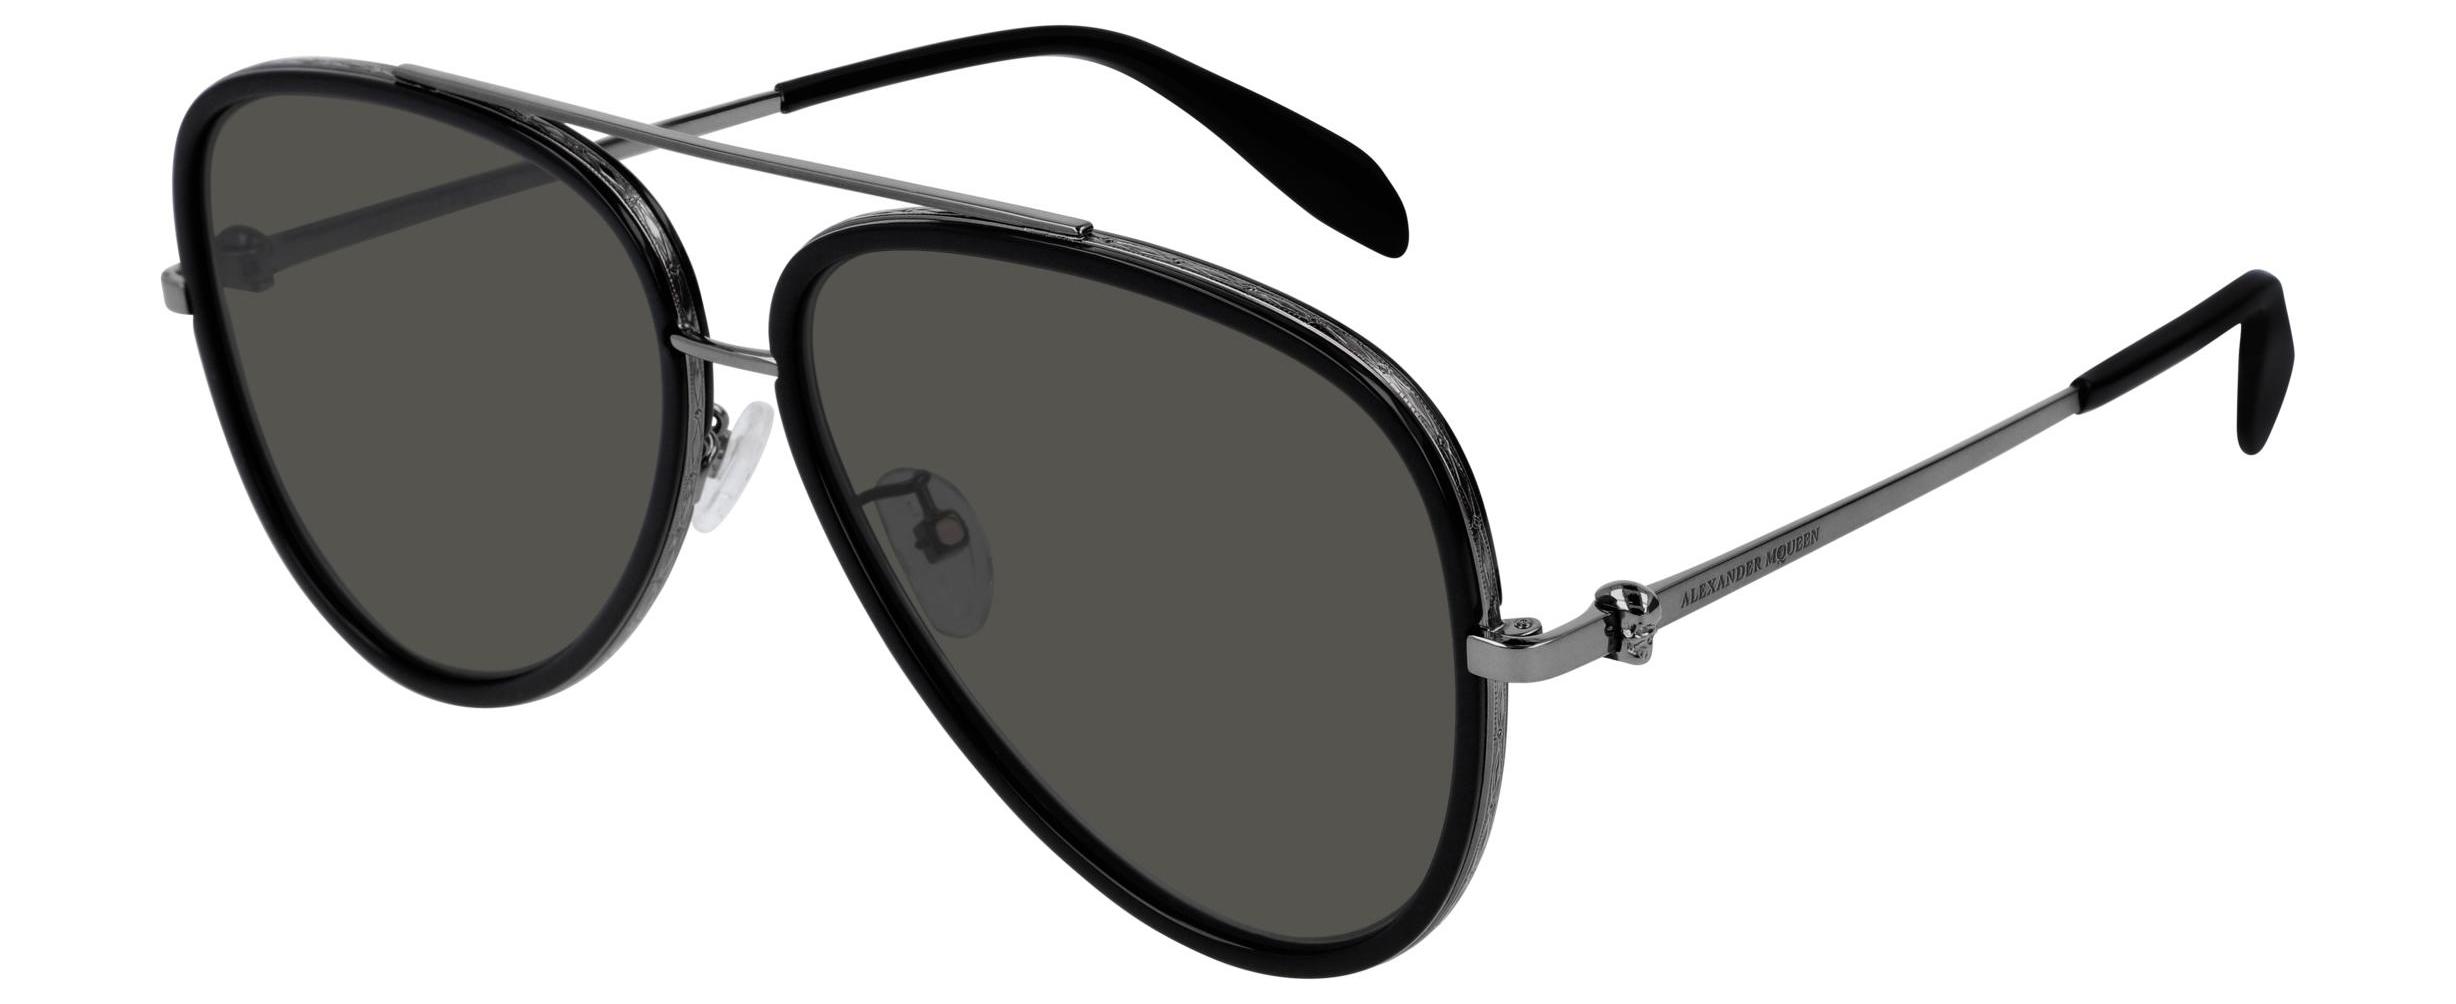 Alexander McQueen 0173s Aviator Sunglasses in Gray for Men - Lyst